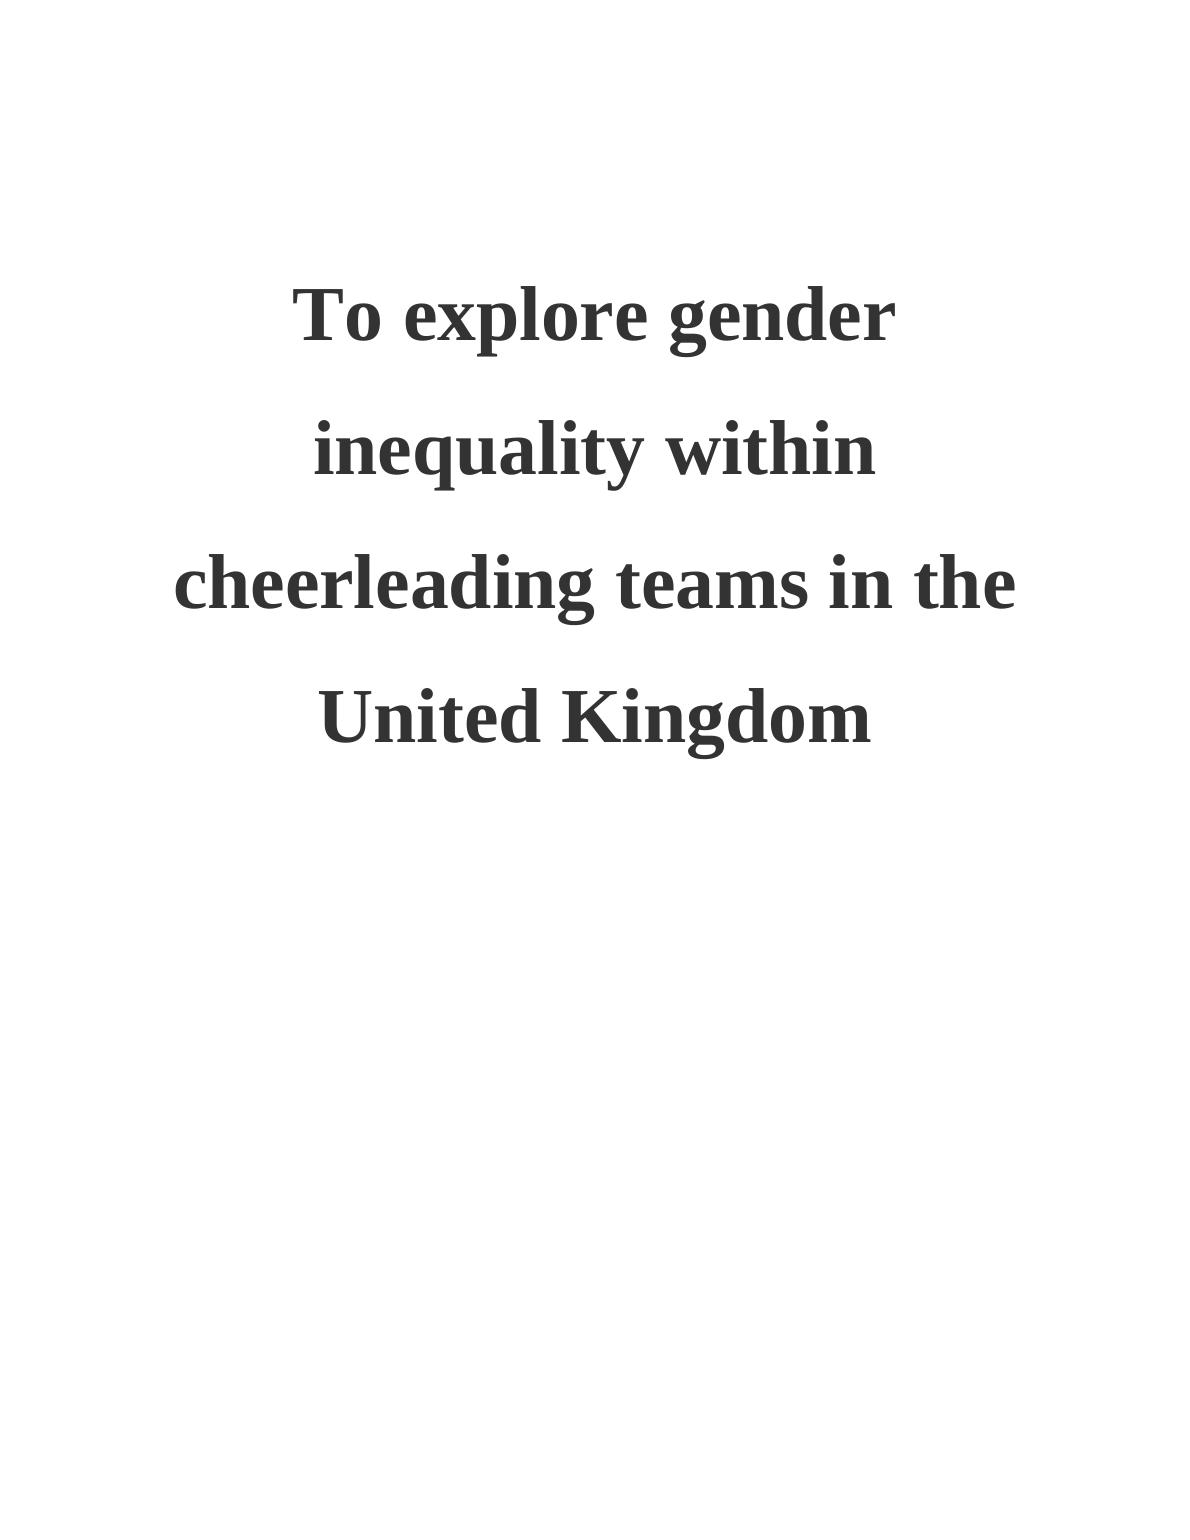 Exploring Gender Inequality in UK Cheerleading Teams_1